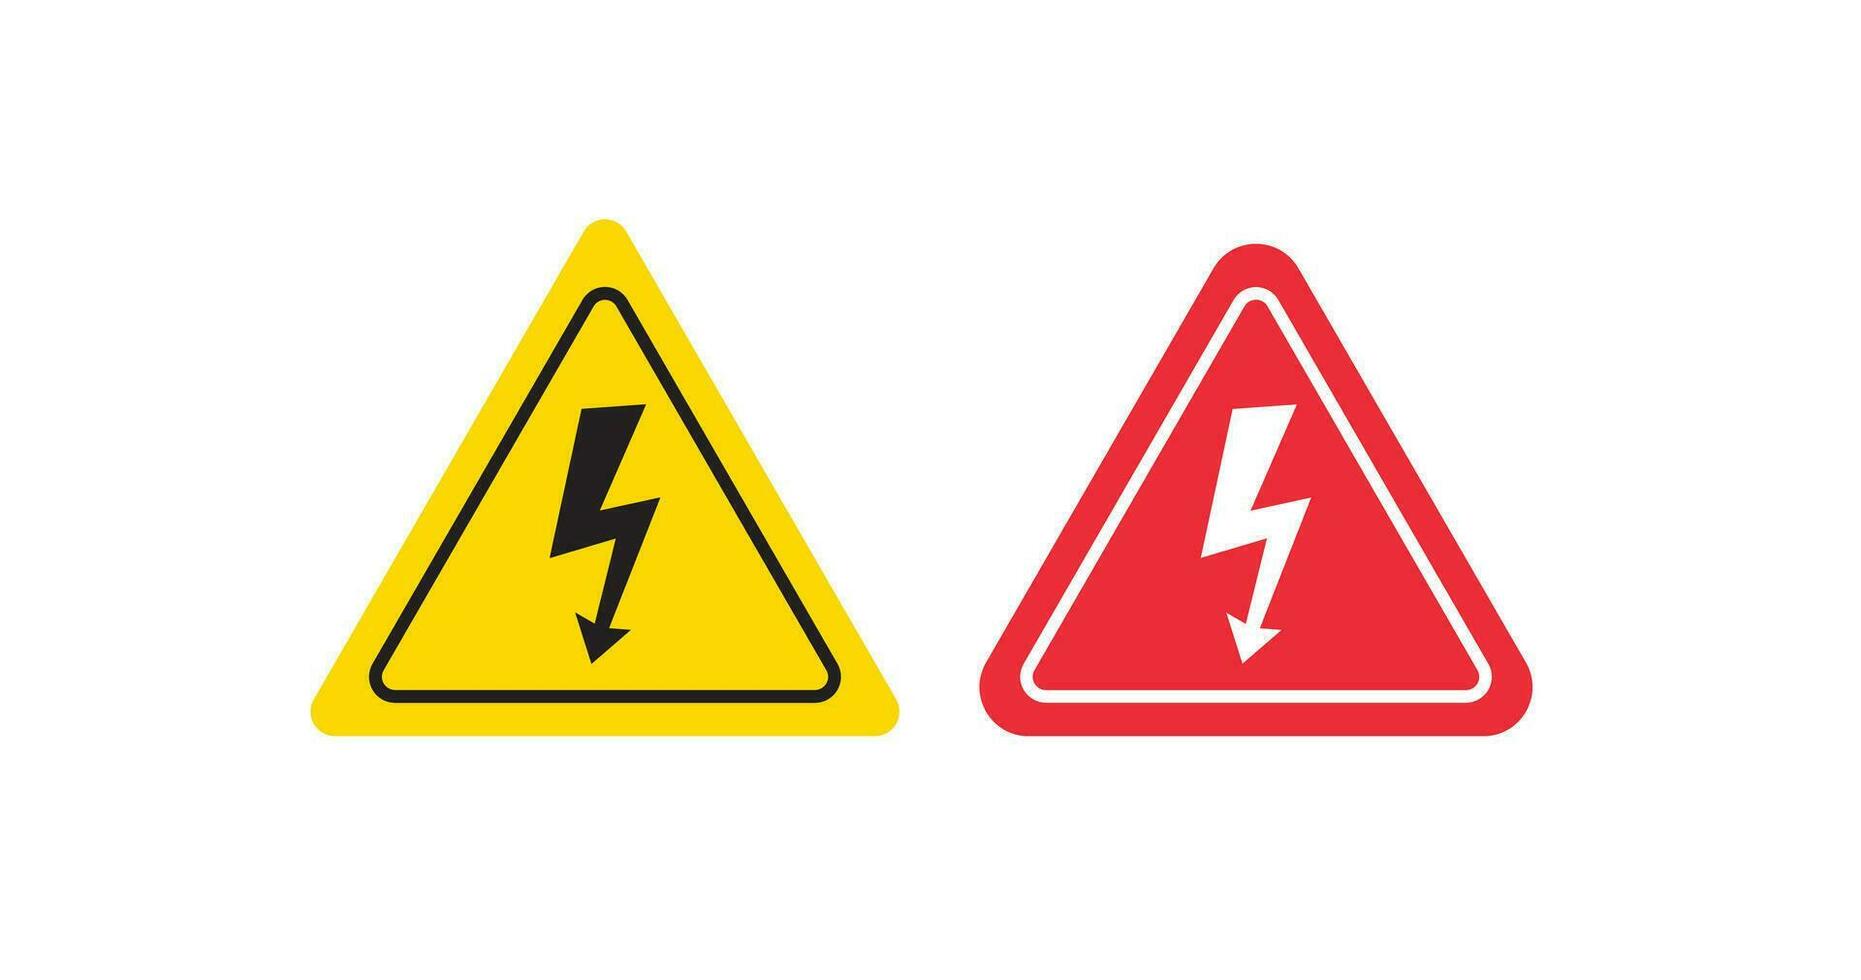 High voltage sign icon. Electric shock hazard vector